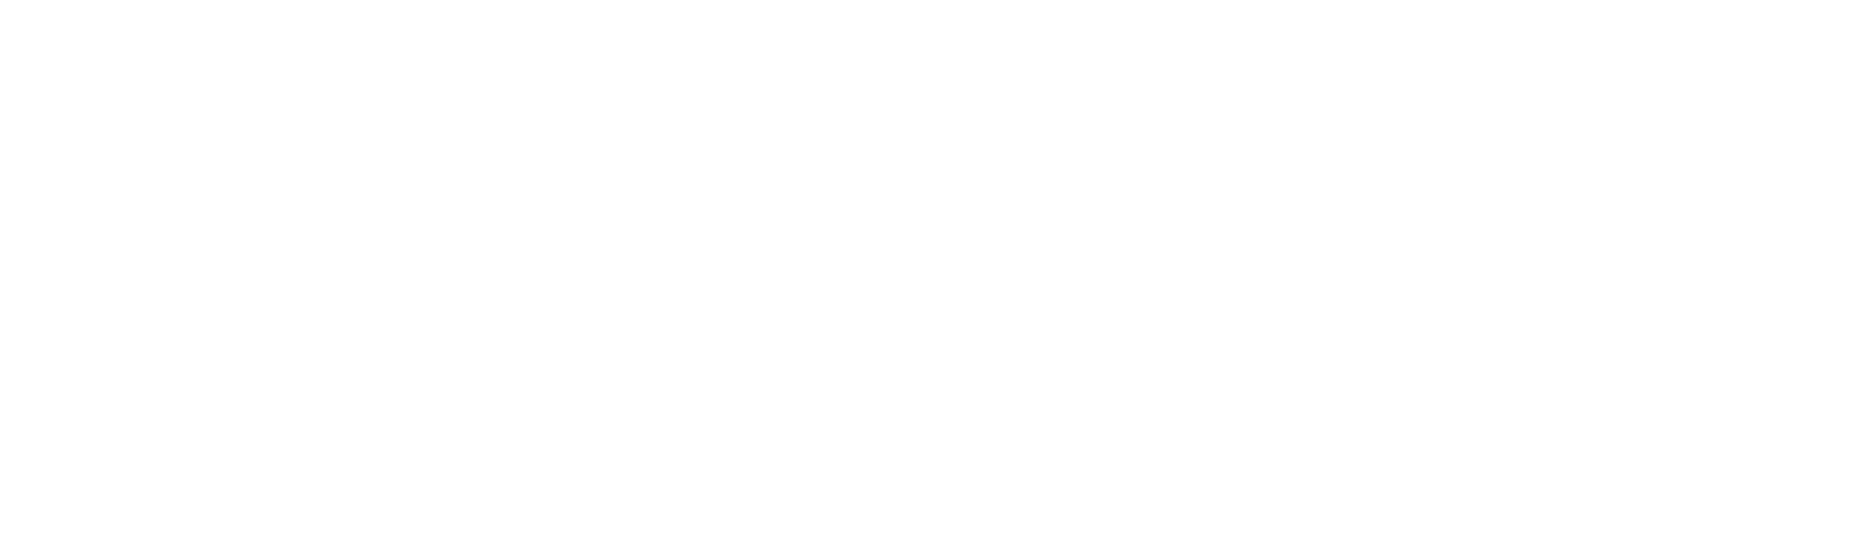 ScotSoft2020 dated -01